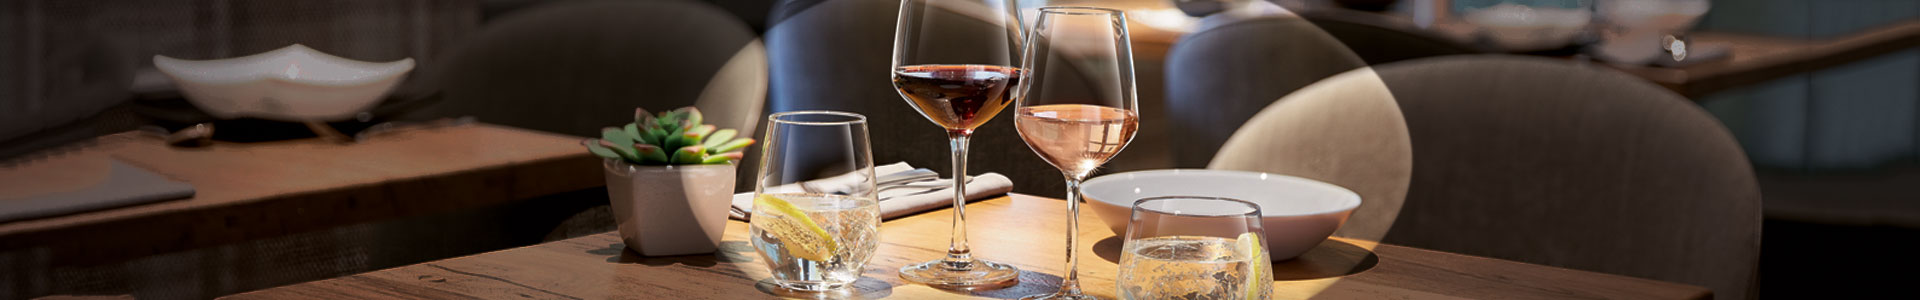 Verschiedene Gläser der Vina Juliette Serie von Arcoroc auf einem gedeckten Tisch.